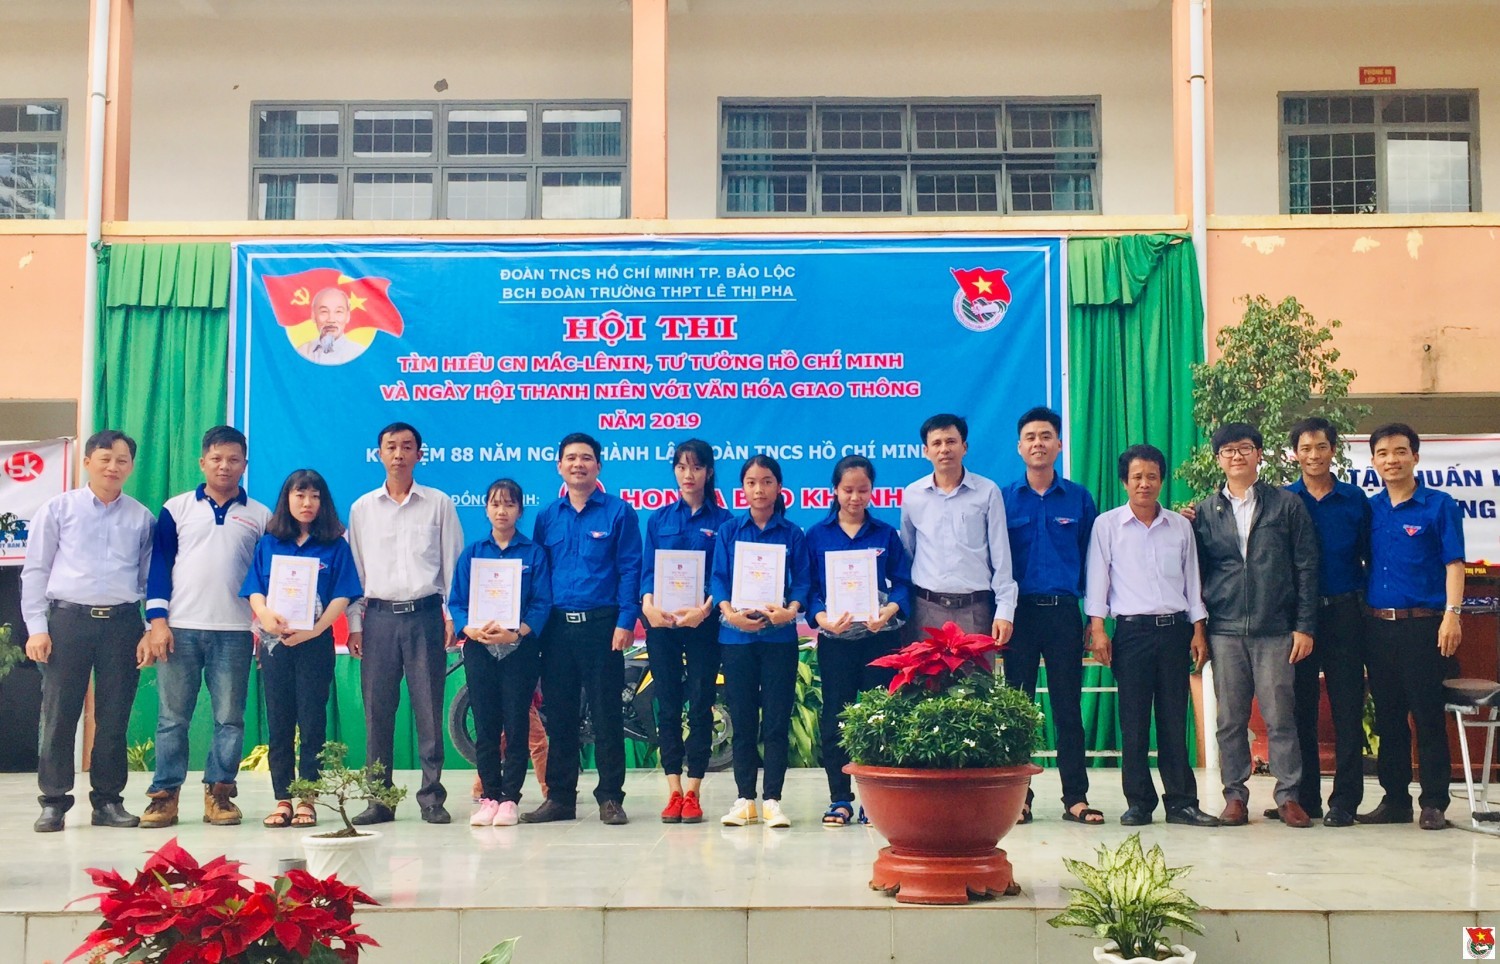 Thành đoàn Bảo Lộc tổ chức Hội thi tìm hiểu Chủ nghĩa Mác – Lênin  và tư tưởng Hồ Chí Minh trong ĐVTN khối THPT năm 2019